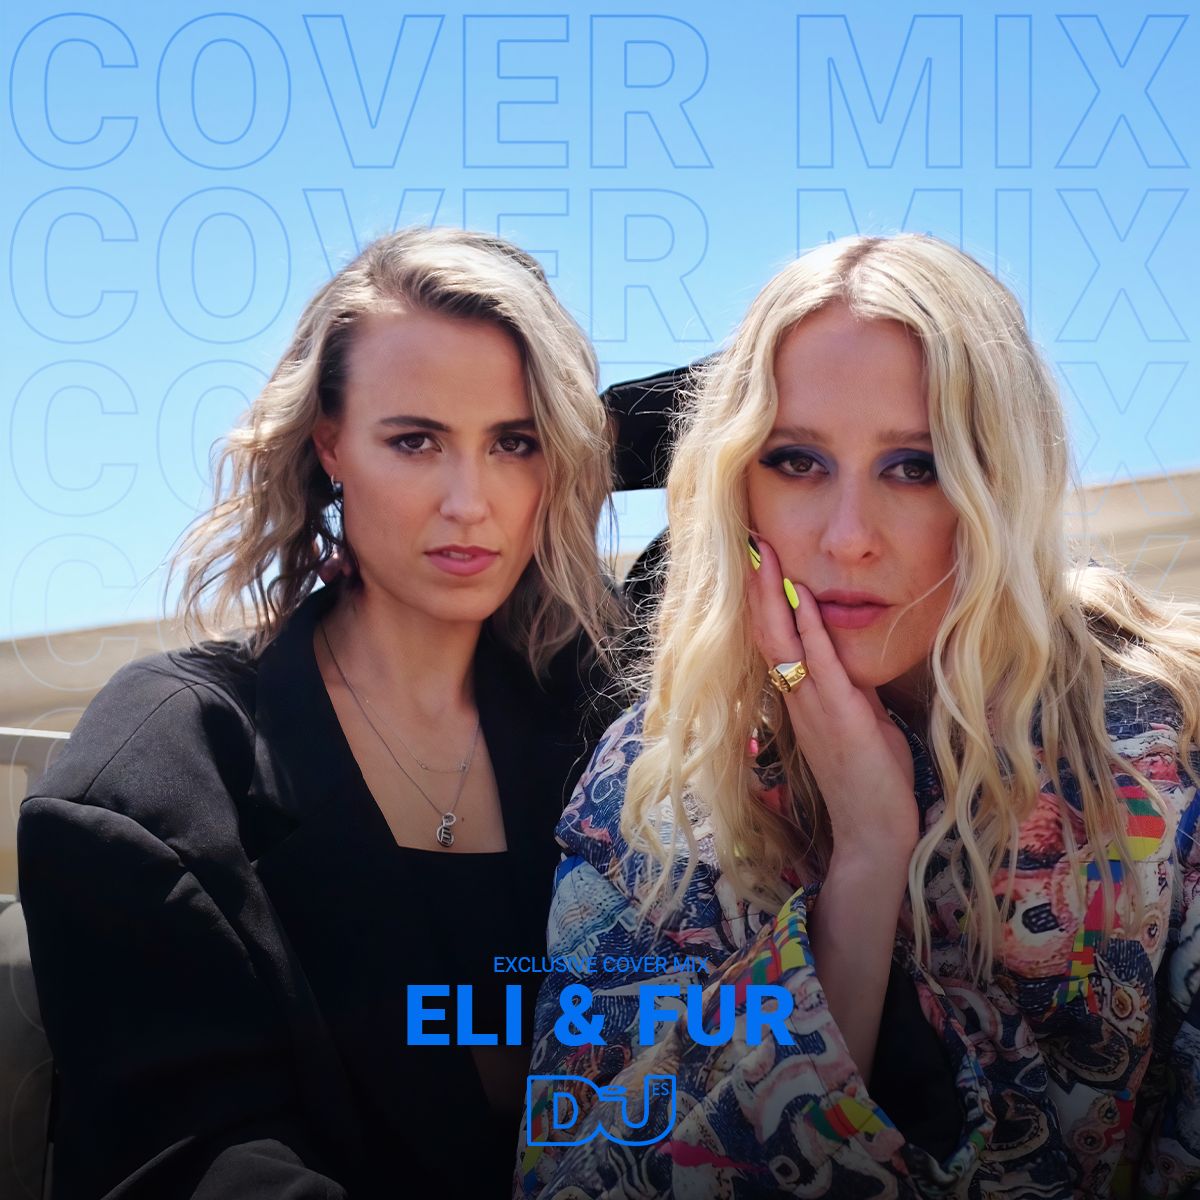 Eli & Fur x DJ Mag ES Exclusive Cover Mix